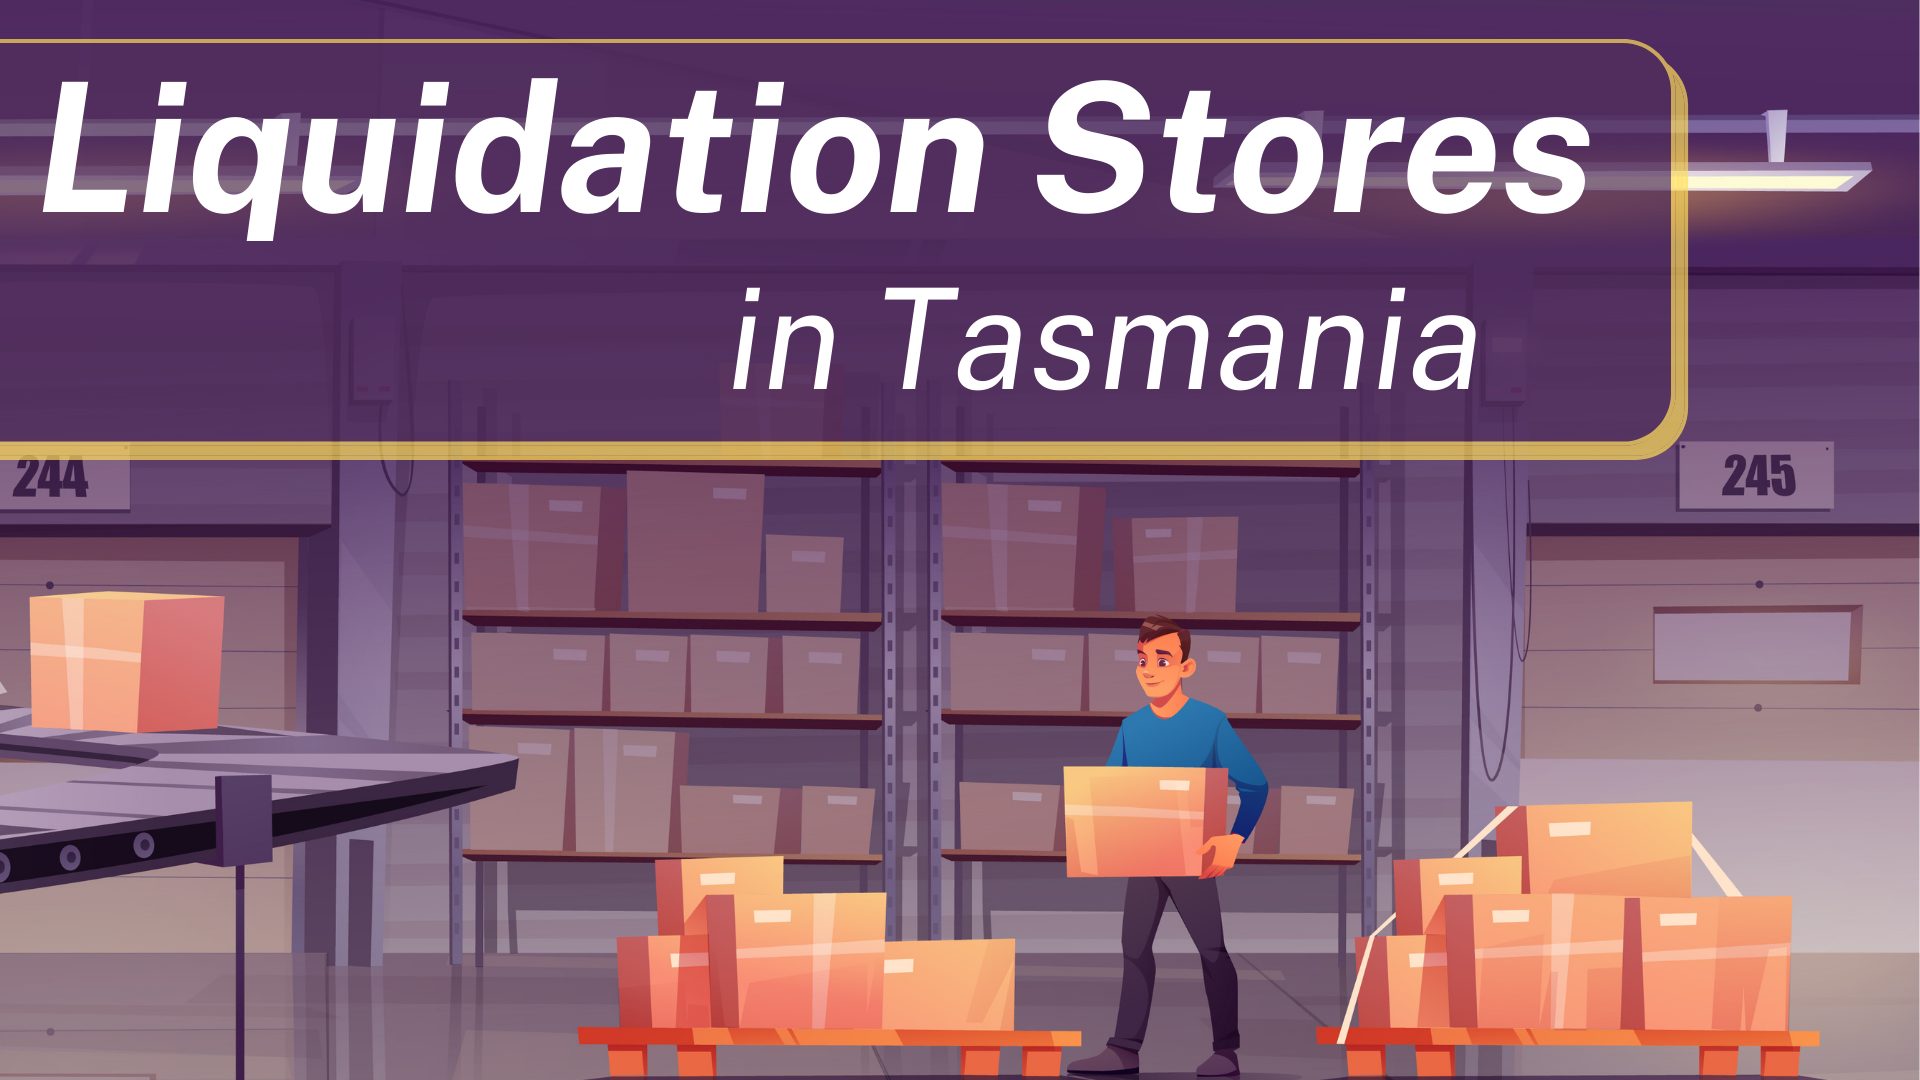 Liquidation Stores in Tasmania